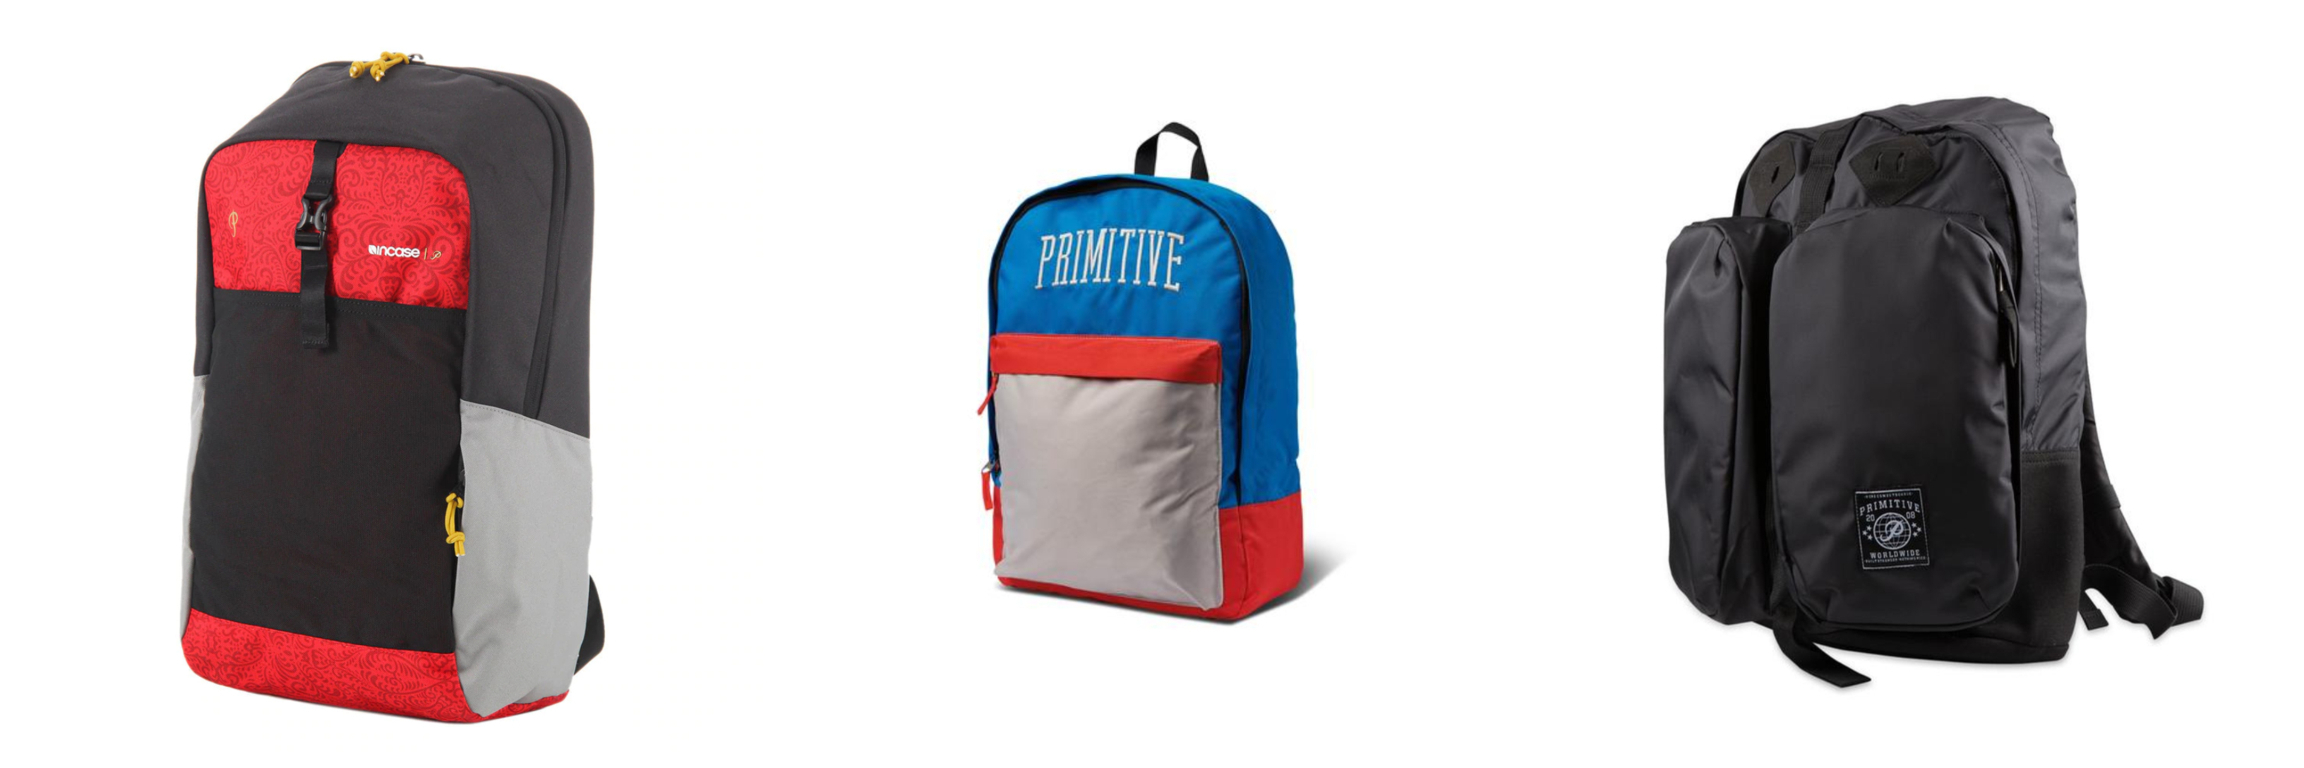 Primitive Backpacks